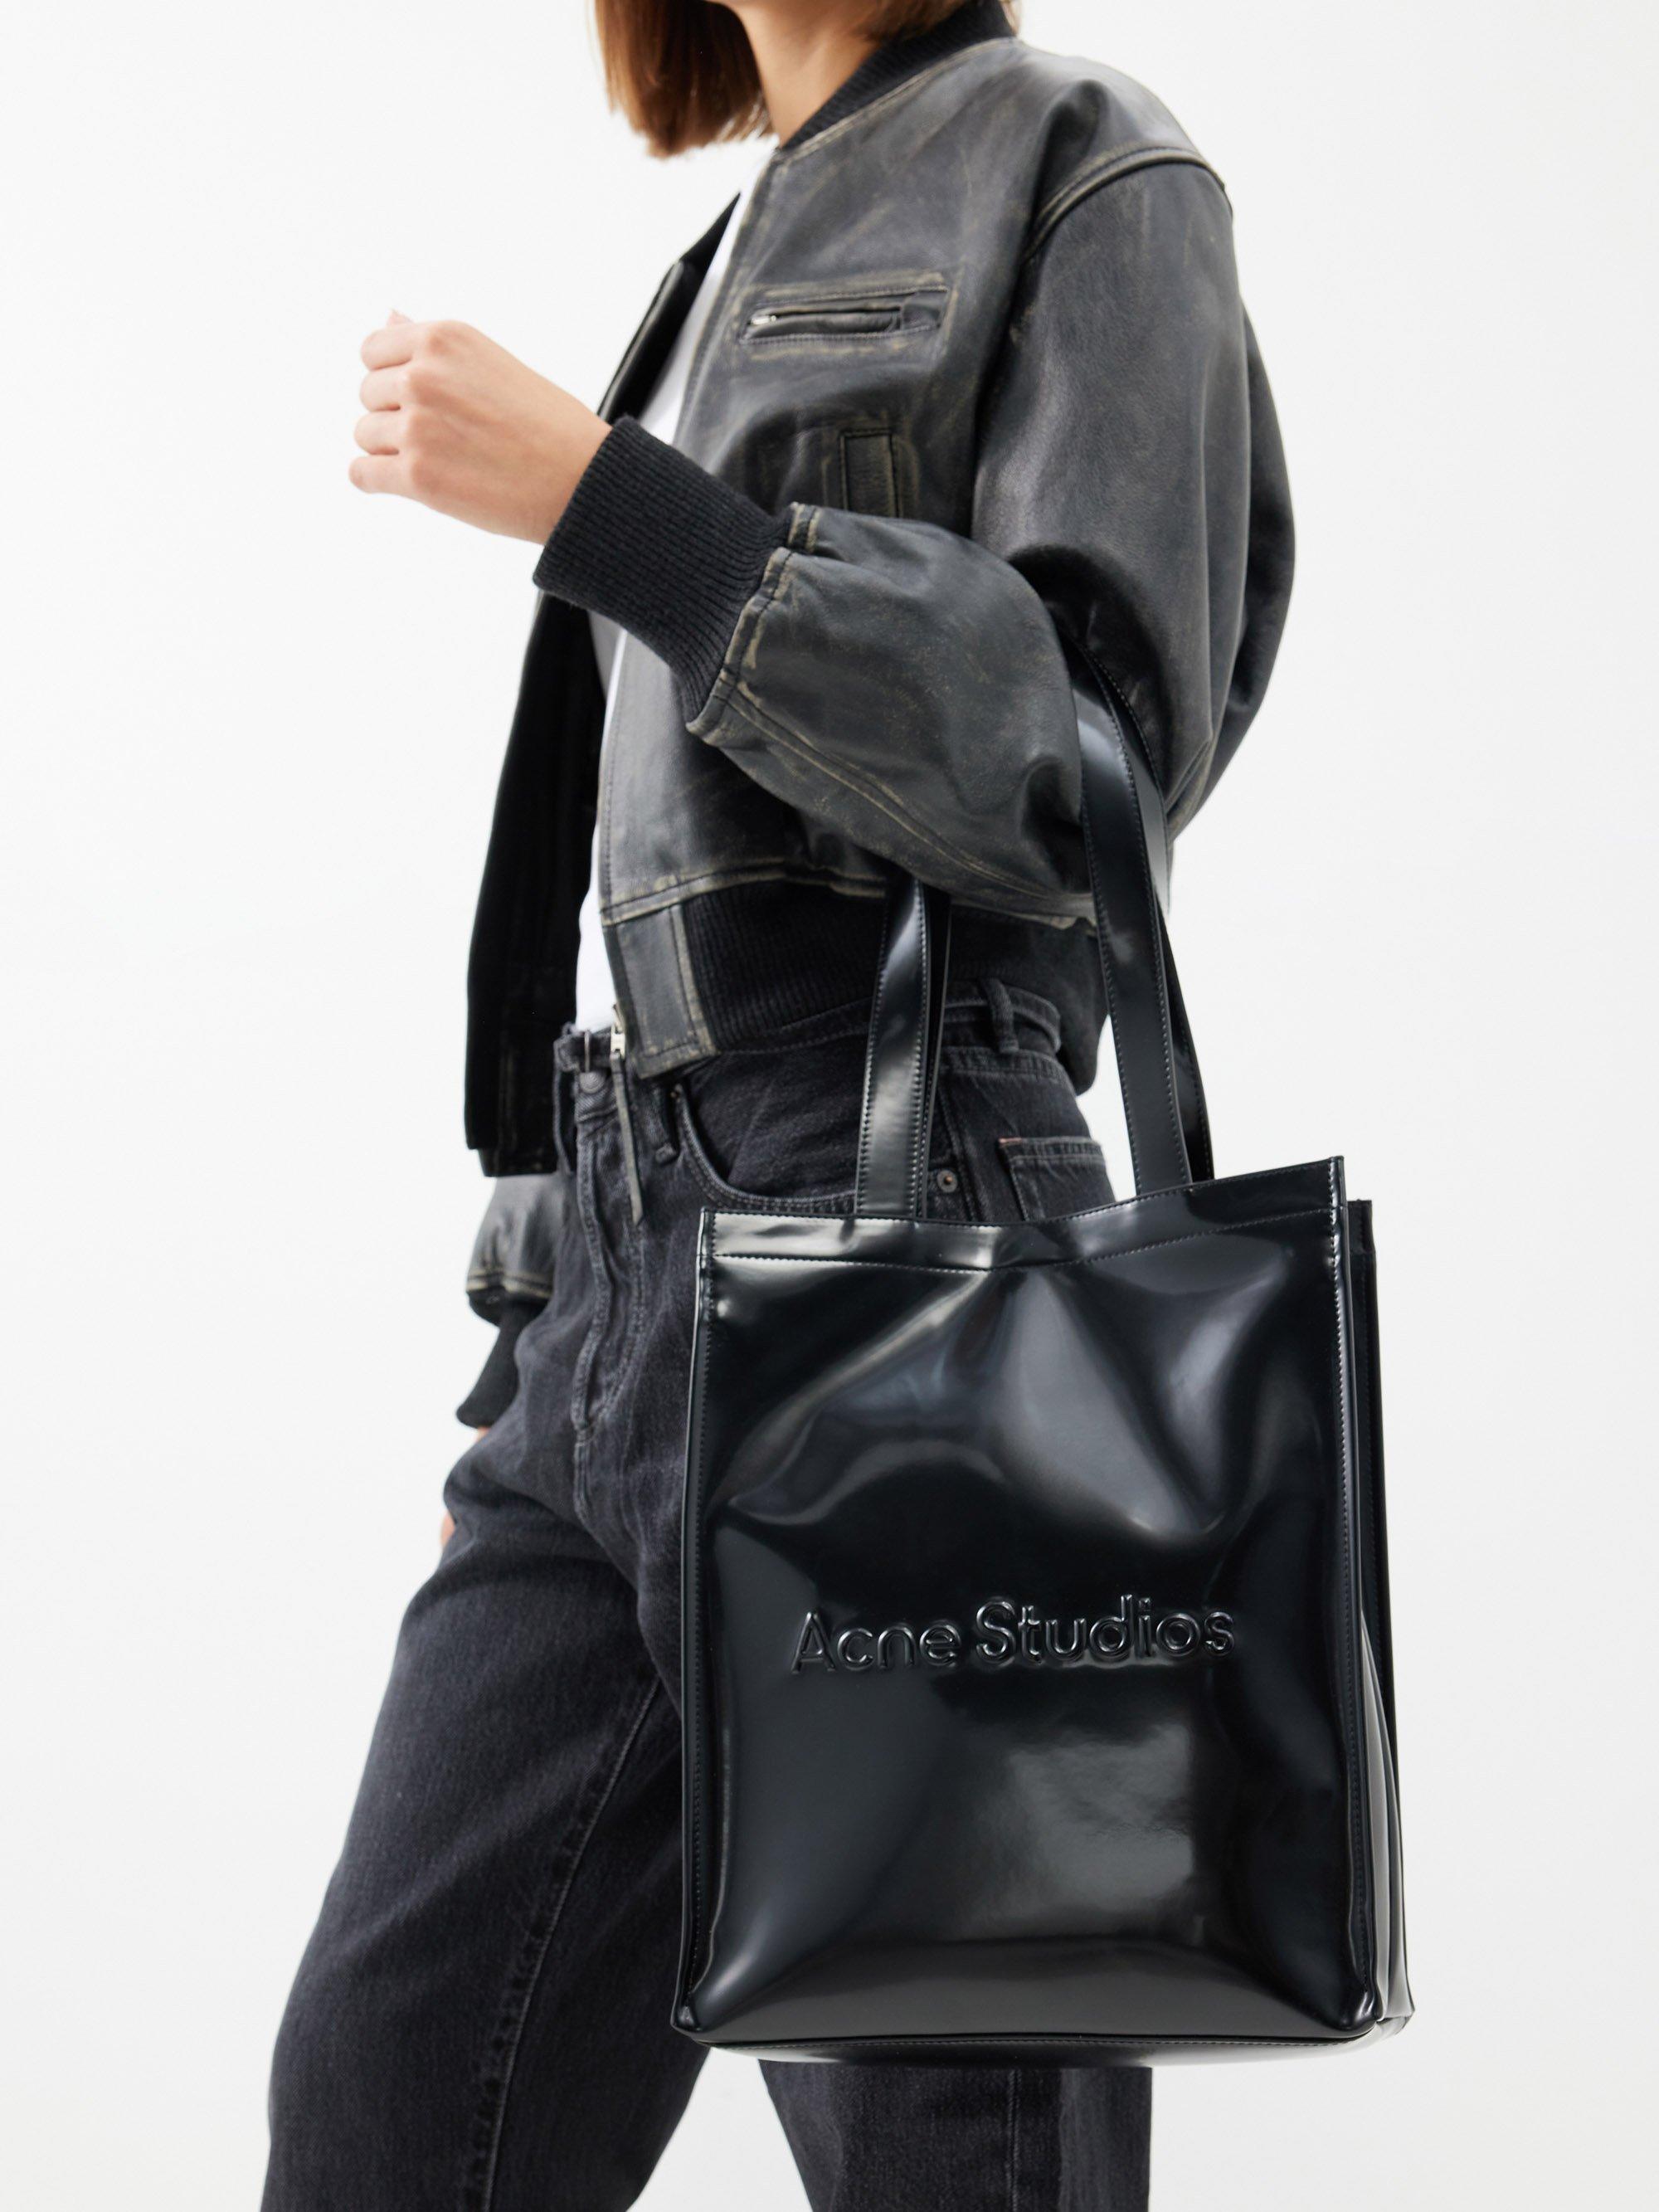 Acne Studios Black Logo Tote Bag